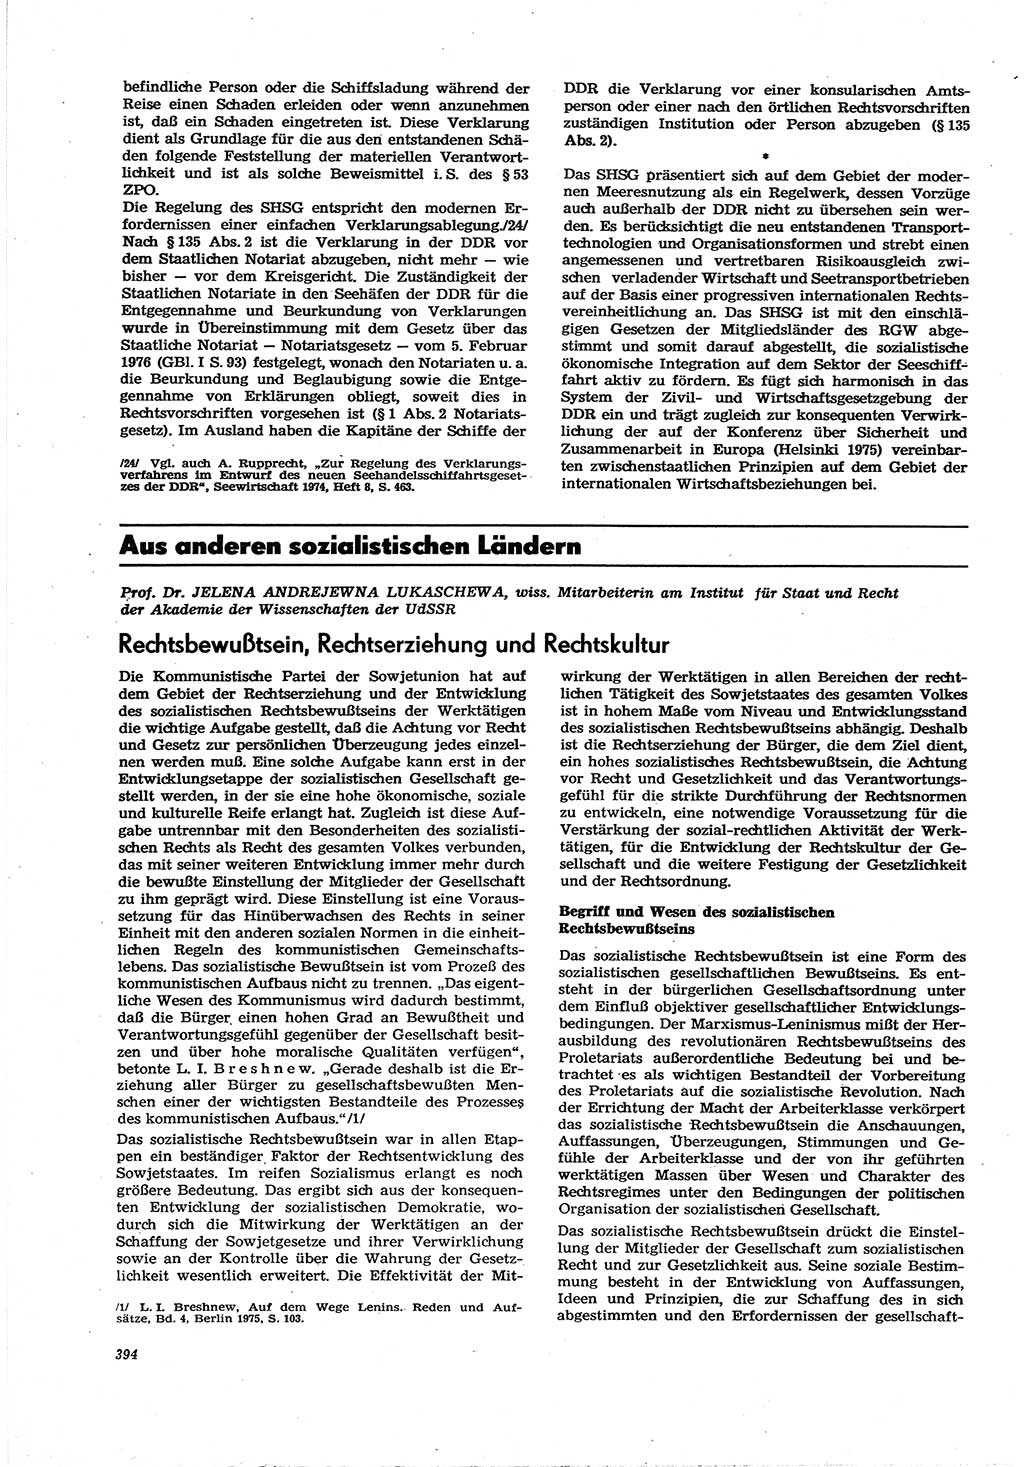 Neue Justiz (NJ), Zeitschrift für Recht und Rechtswissenschaft [Deutsche Demokratische Republik (DDR)], 30. Jahrgang 1976, Seite 394 (NJ DDR 1976, S. 394)